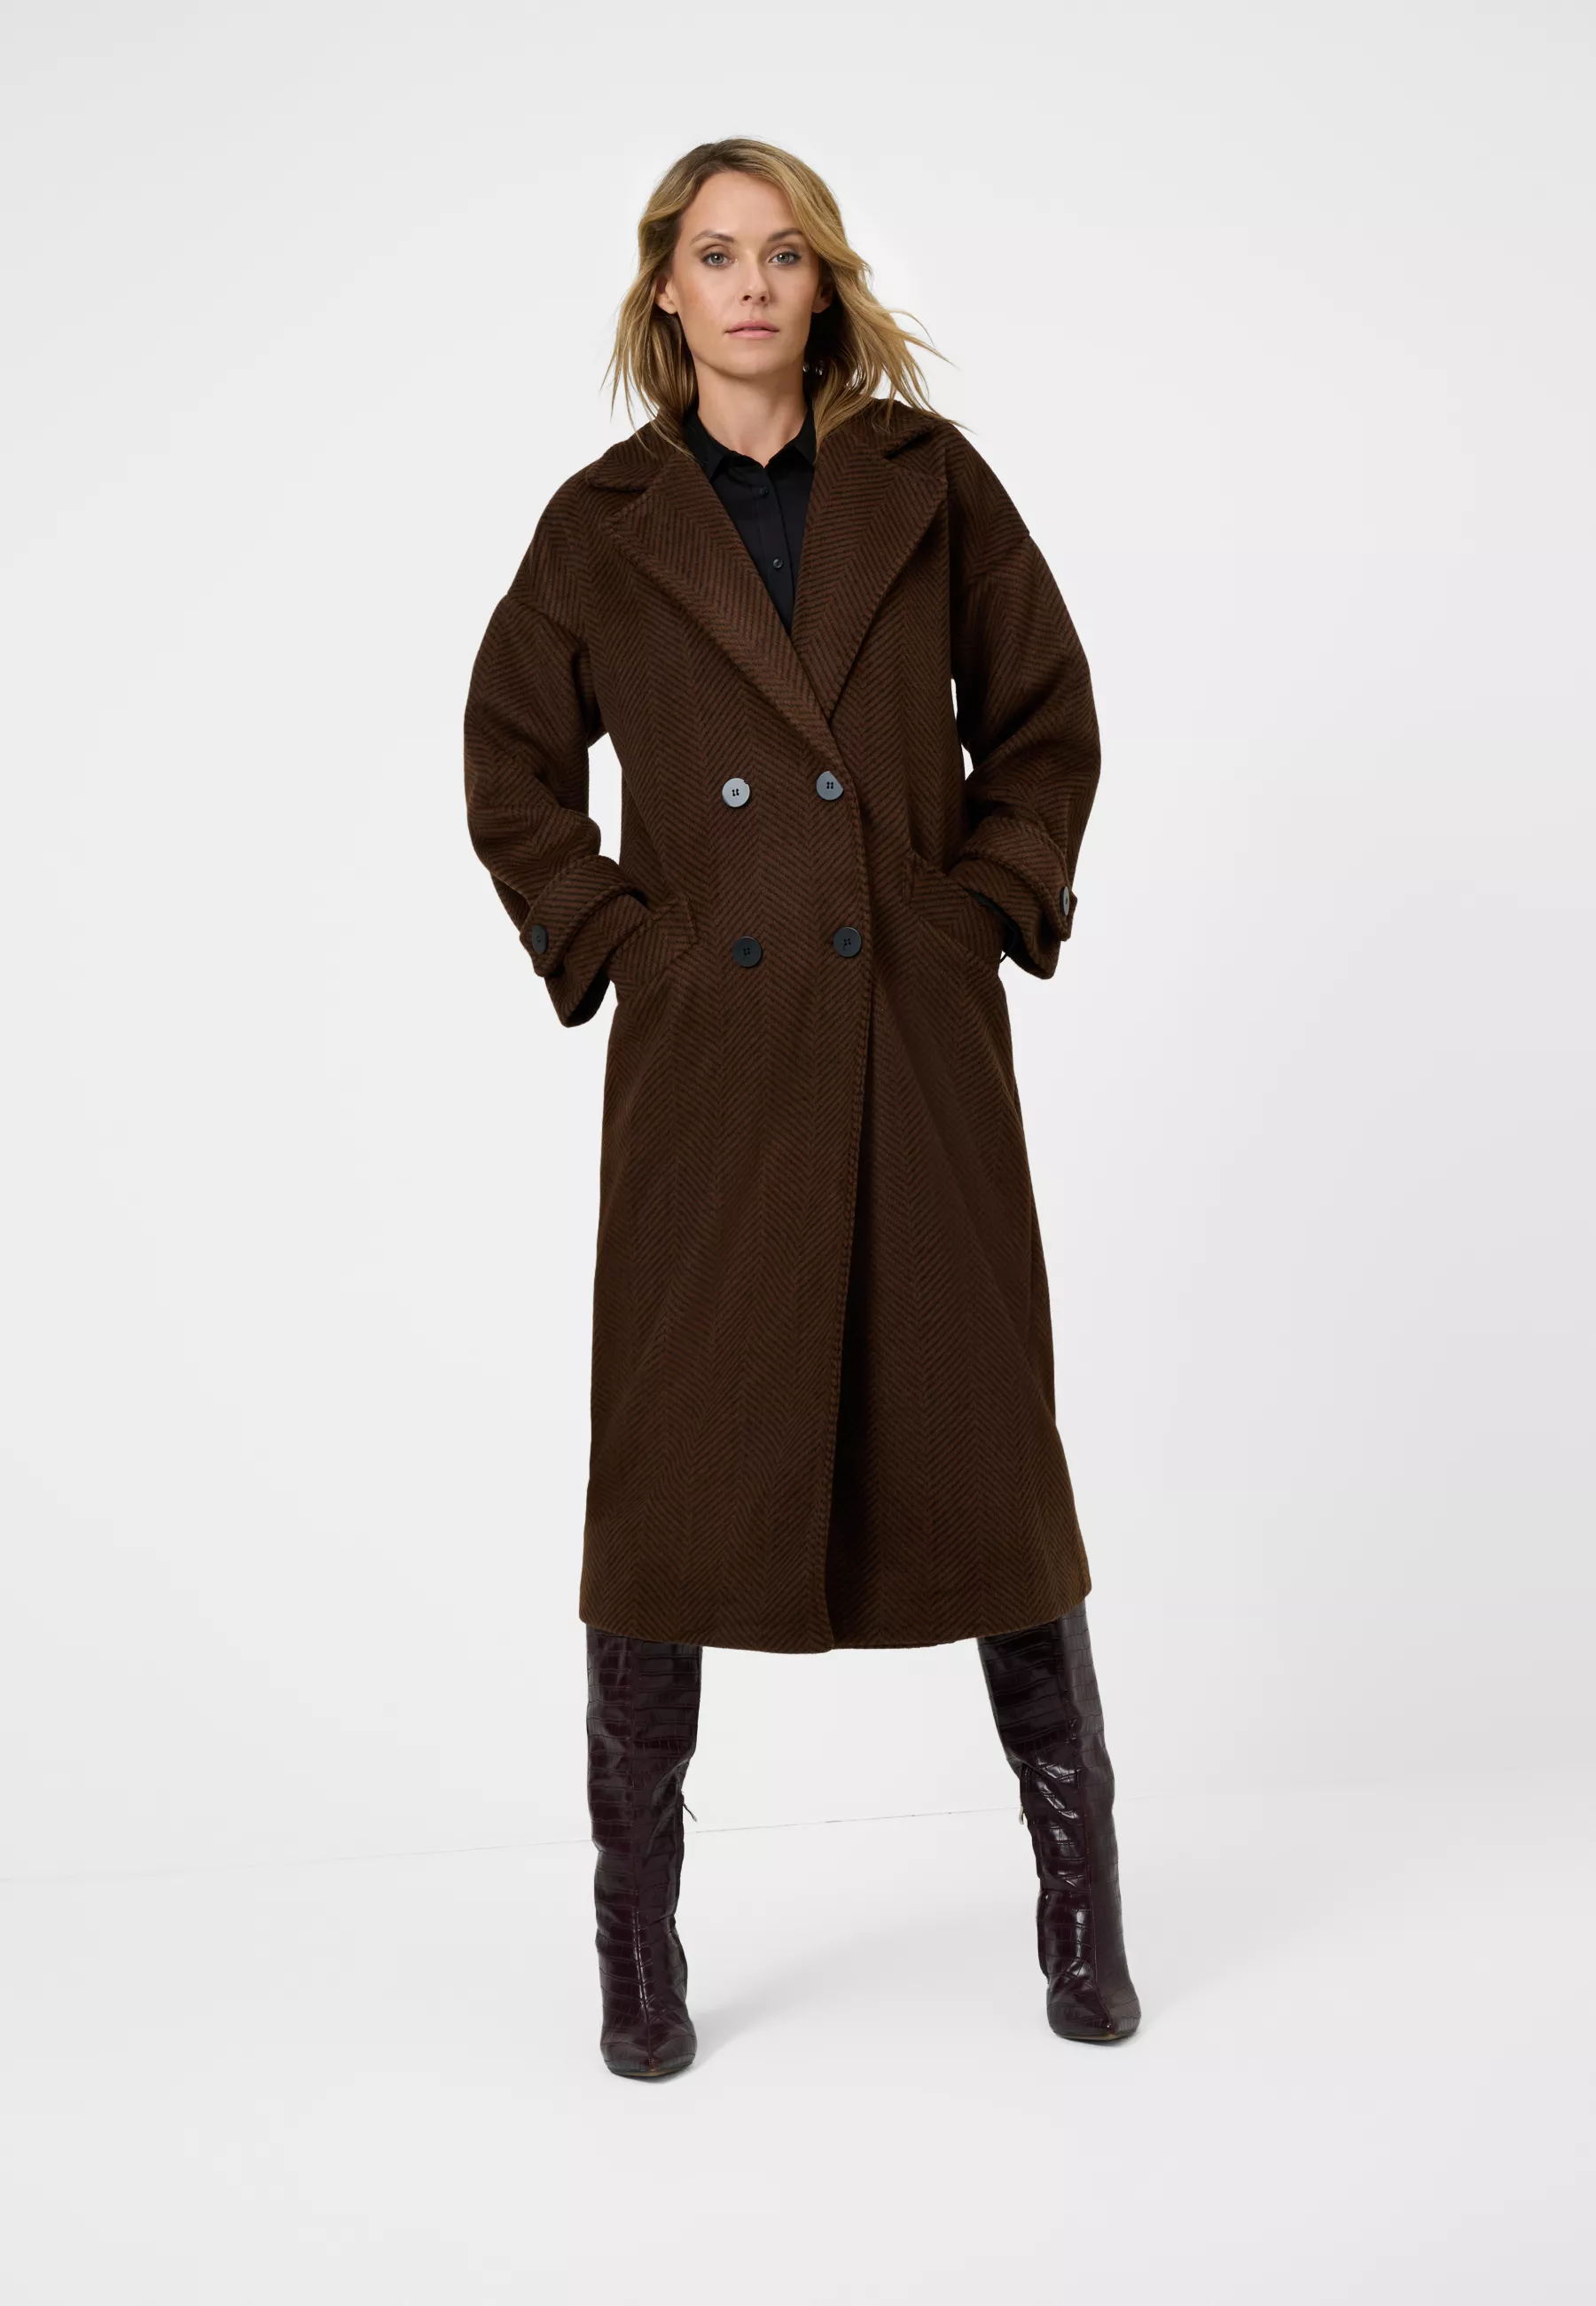 Damen Textil Mantel Franca in Braun gestreift von Ricano, Vollansicht am Model